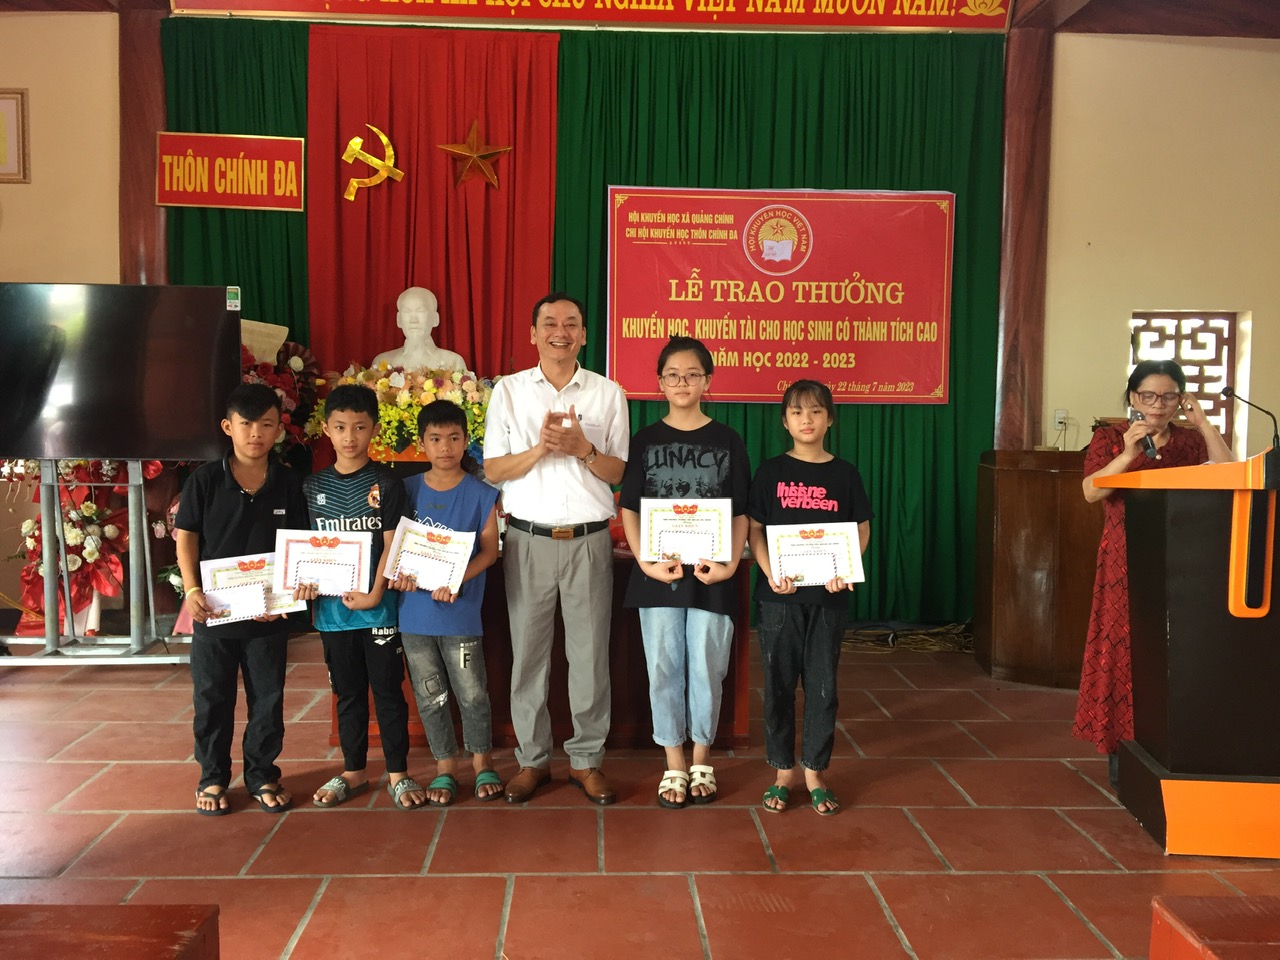 Hội khuyến học xã Quảng Chính trao quà khuyến học, khuyến tài cho học sinh thôn Chính Đa có thành tích xuất sắc năm học 2022 – 2023!